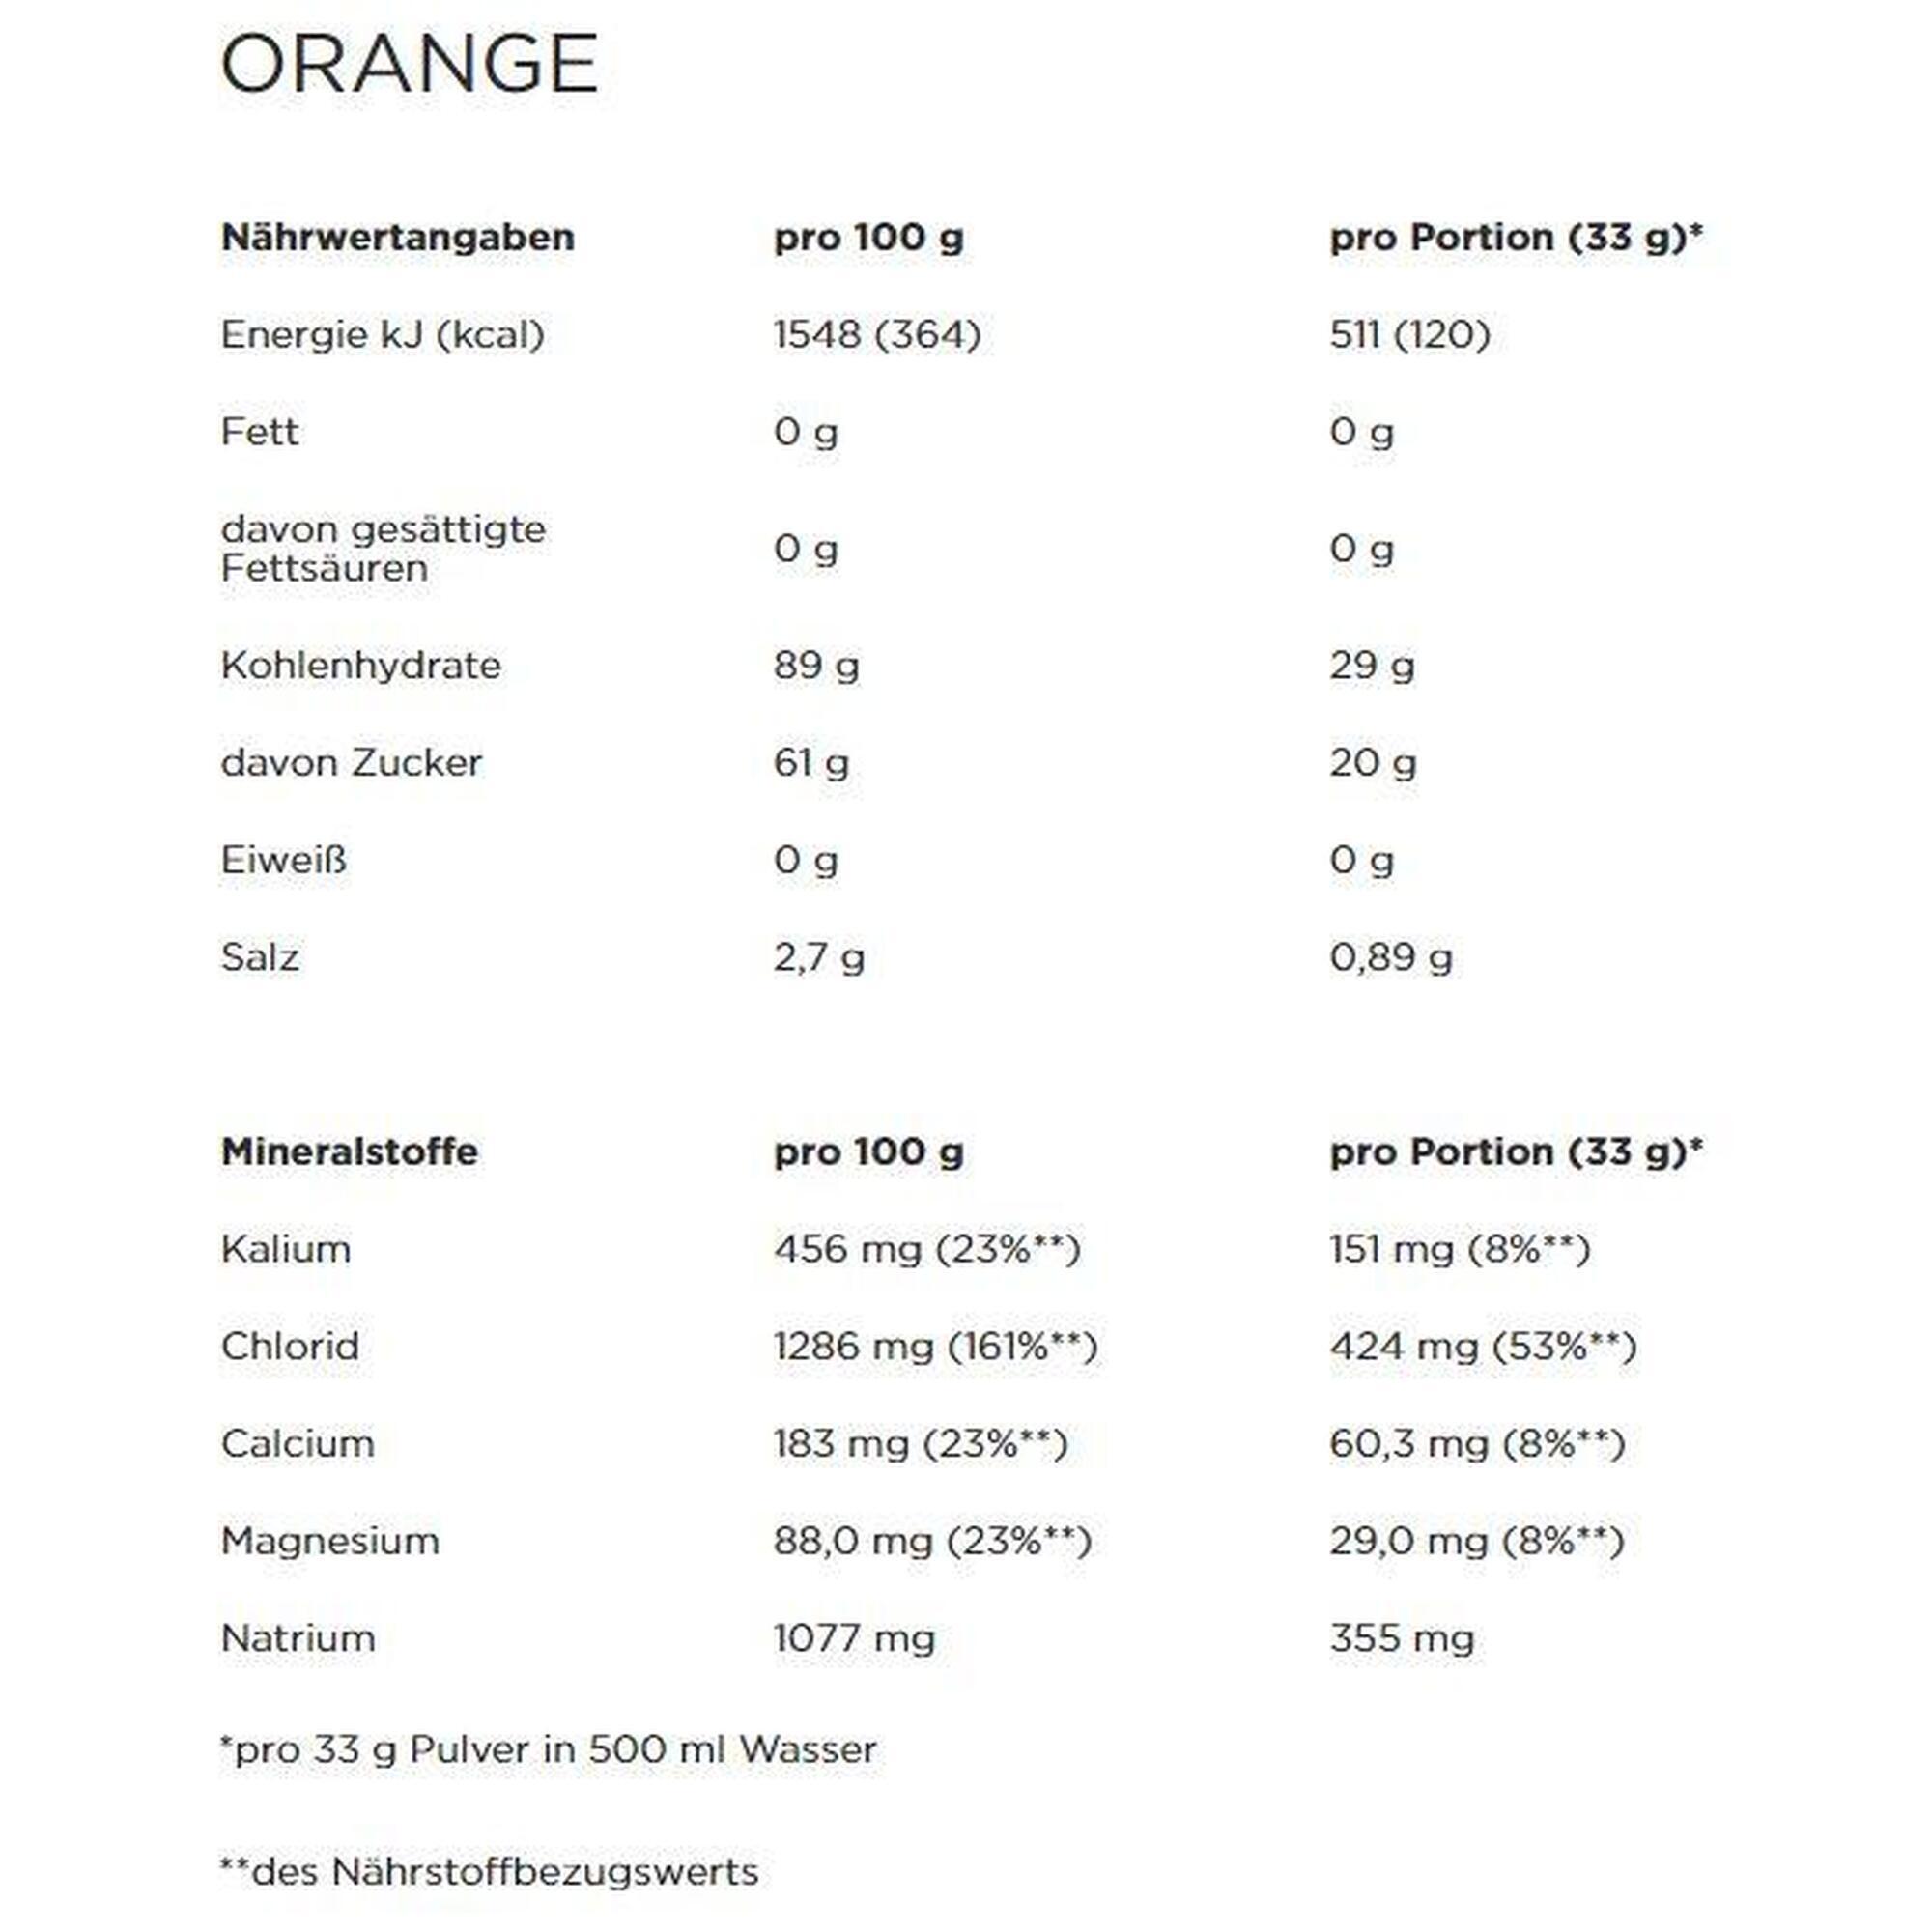 Isoactive Powerbar - Orange 600 gram (18 doseringen)